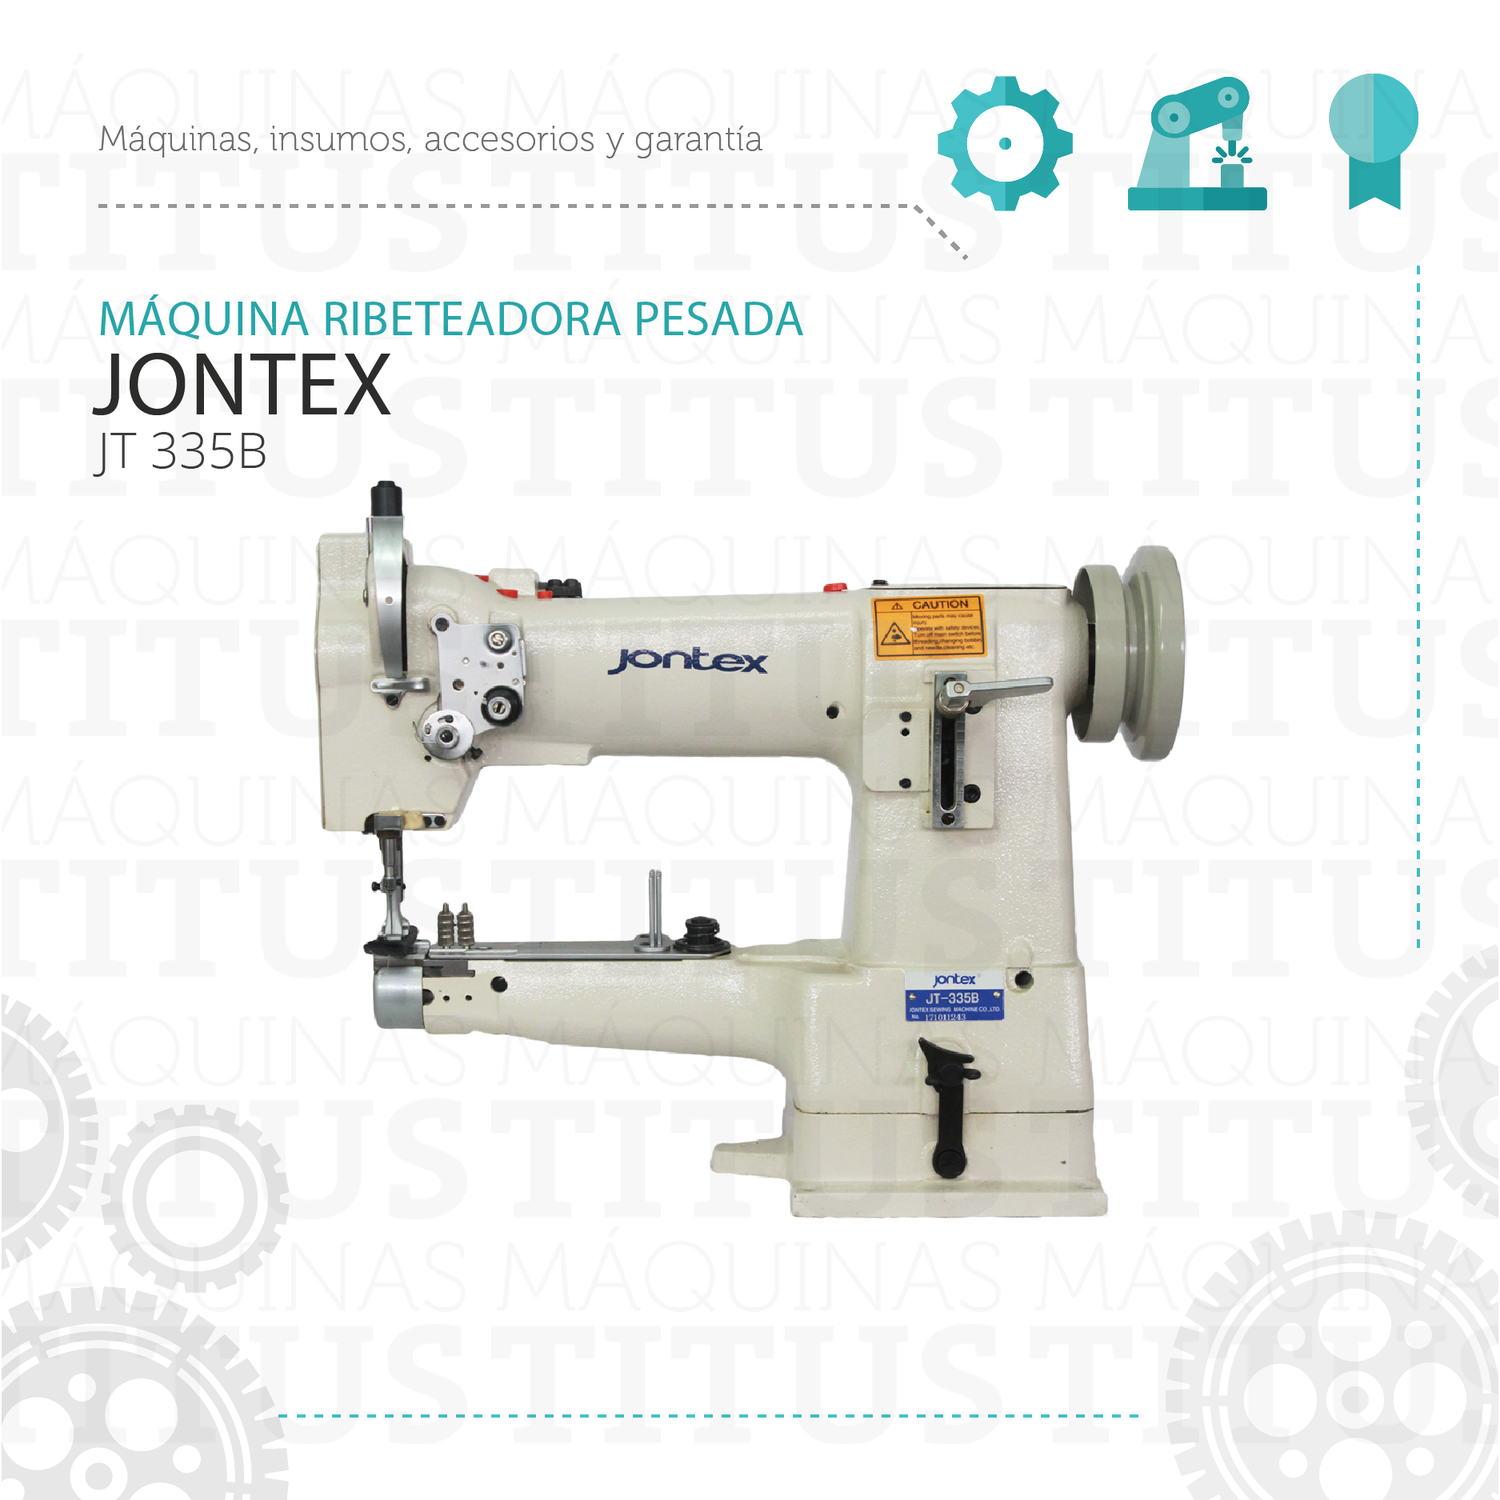 Ribeteadora Jontex JT 335 B Pesada Maquina De Coser - Commercio